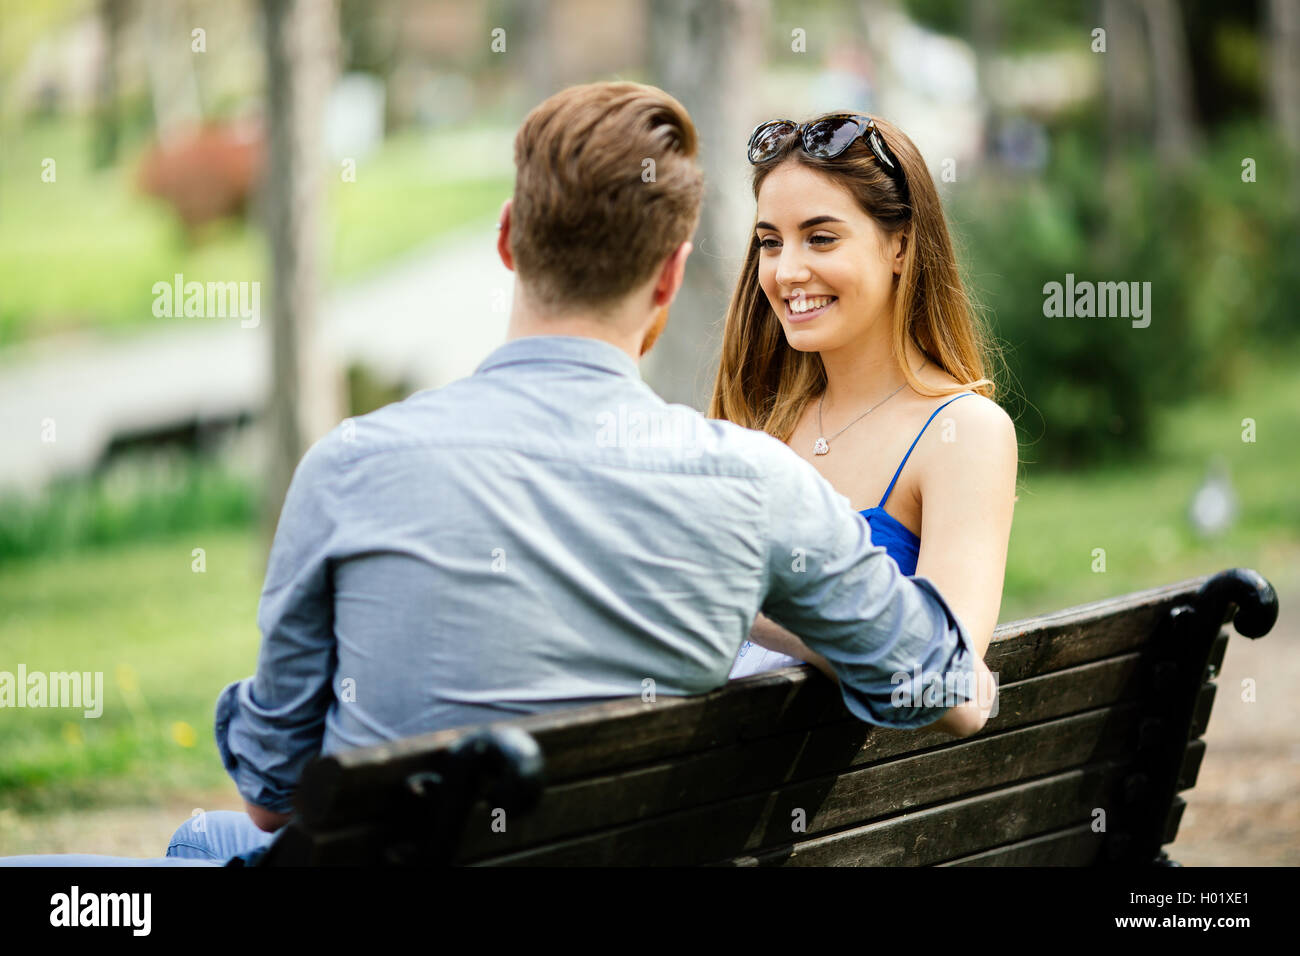 Влюбилась в незнакомого парня. Девушка изучает мужчину. Пара на лавочке в парке. Девушка зовет парня к себе. Как понравиться мужчине картинки.